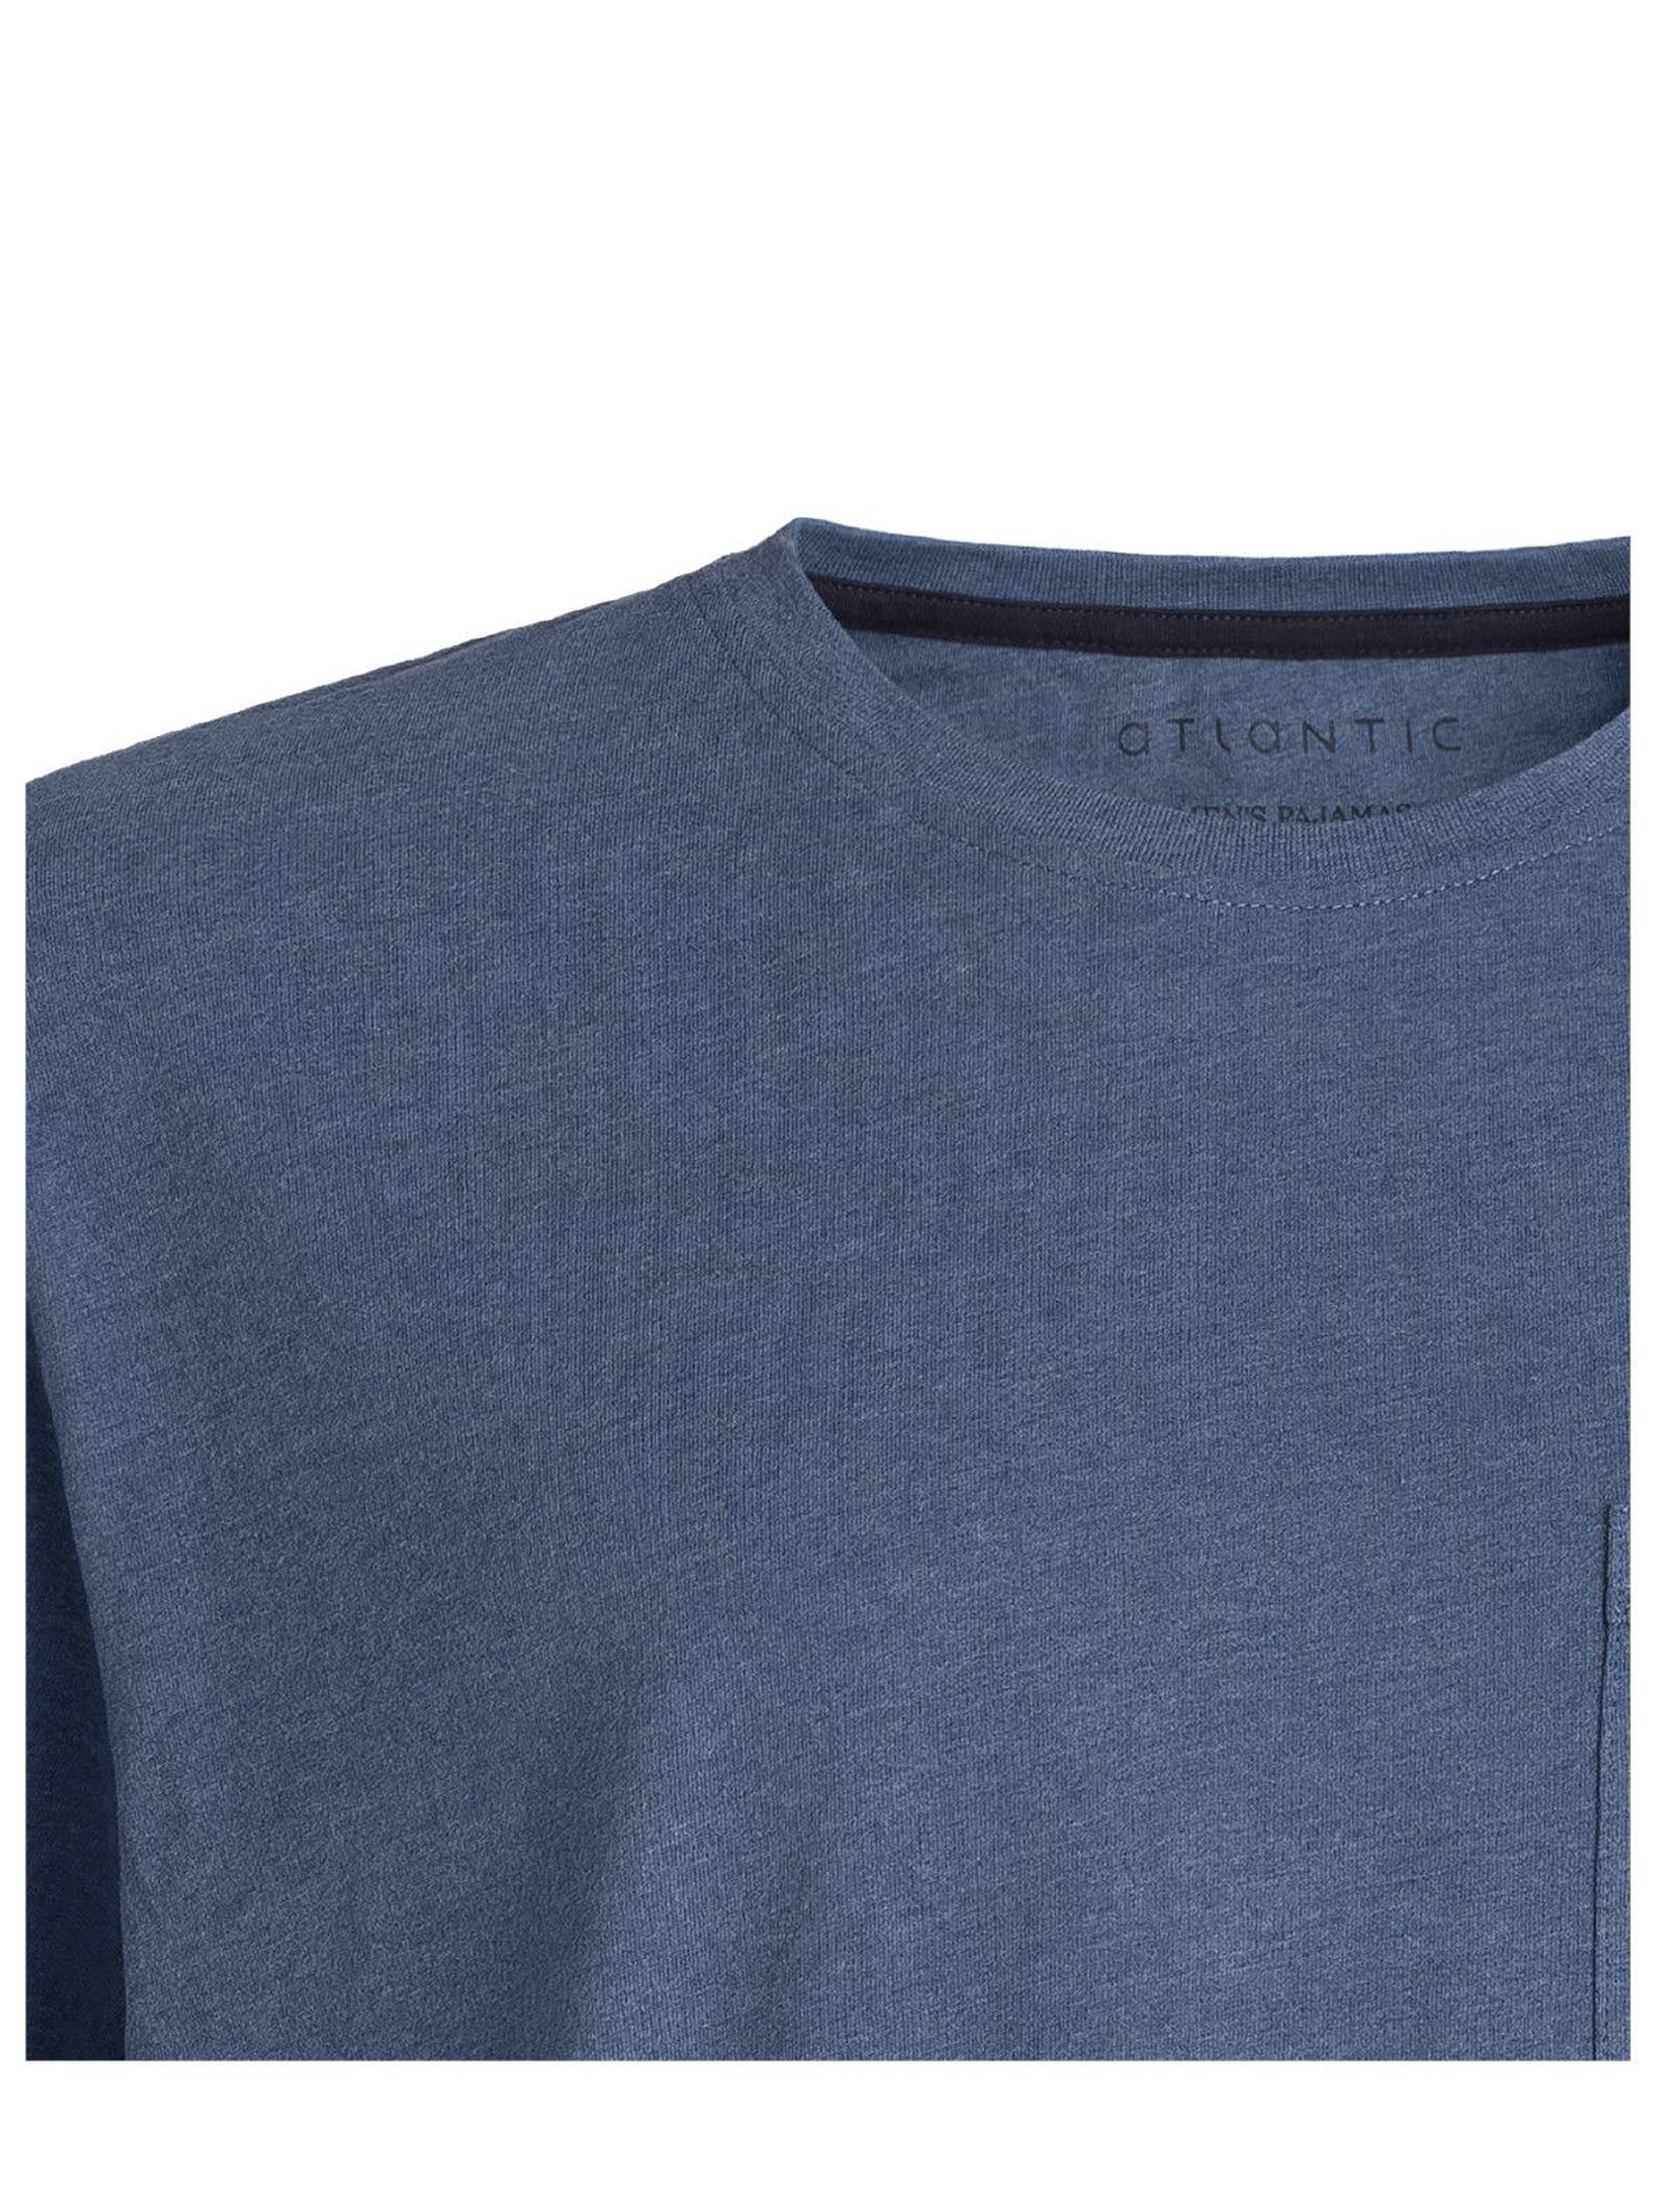 Piżama męska szorty w żaglówki + niebieski t-shirt